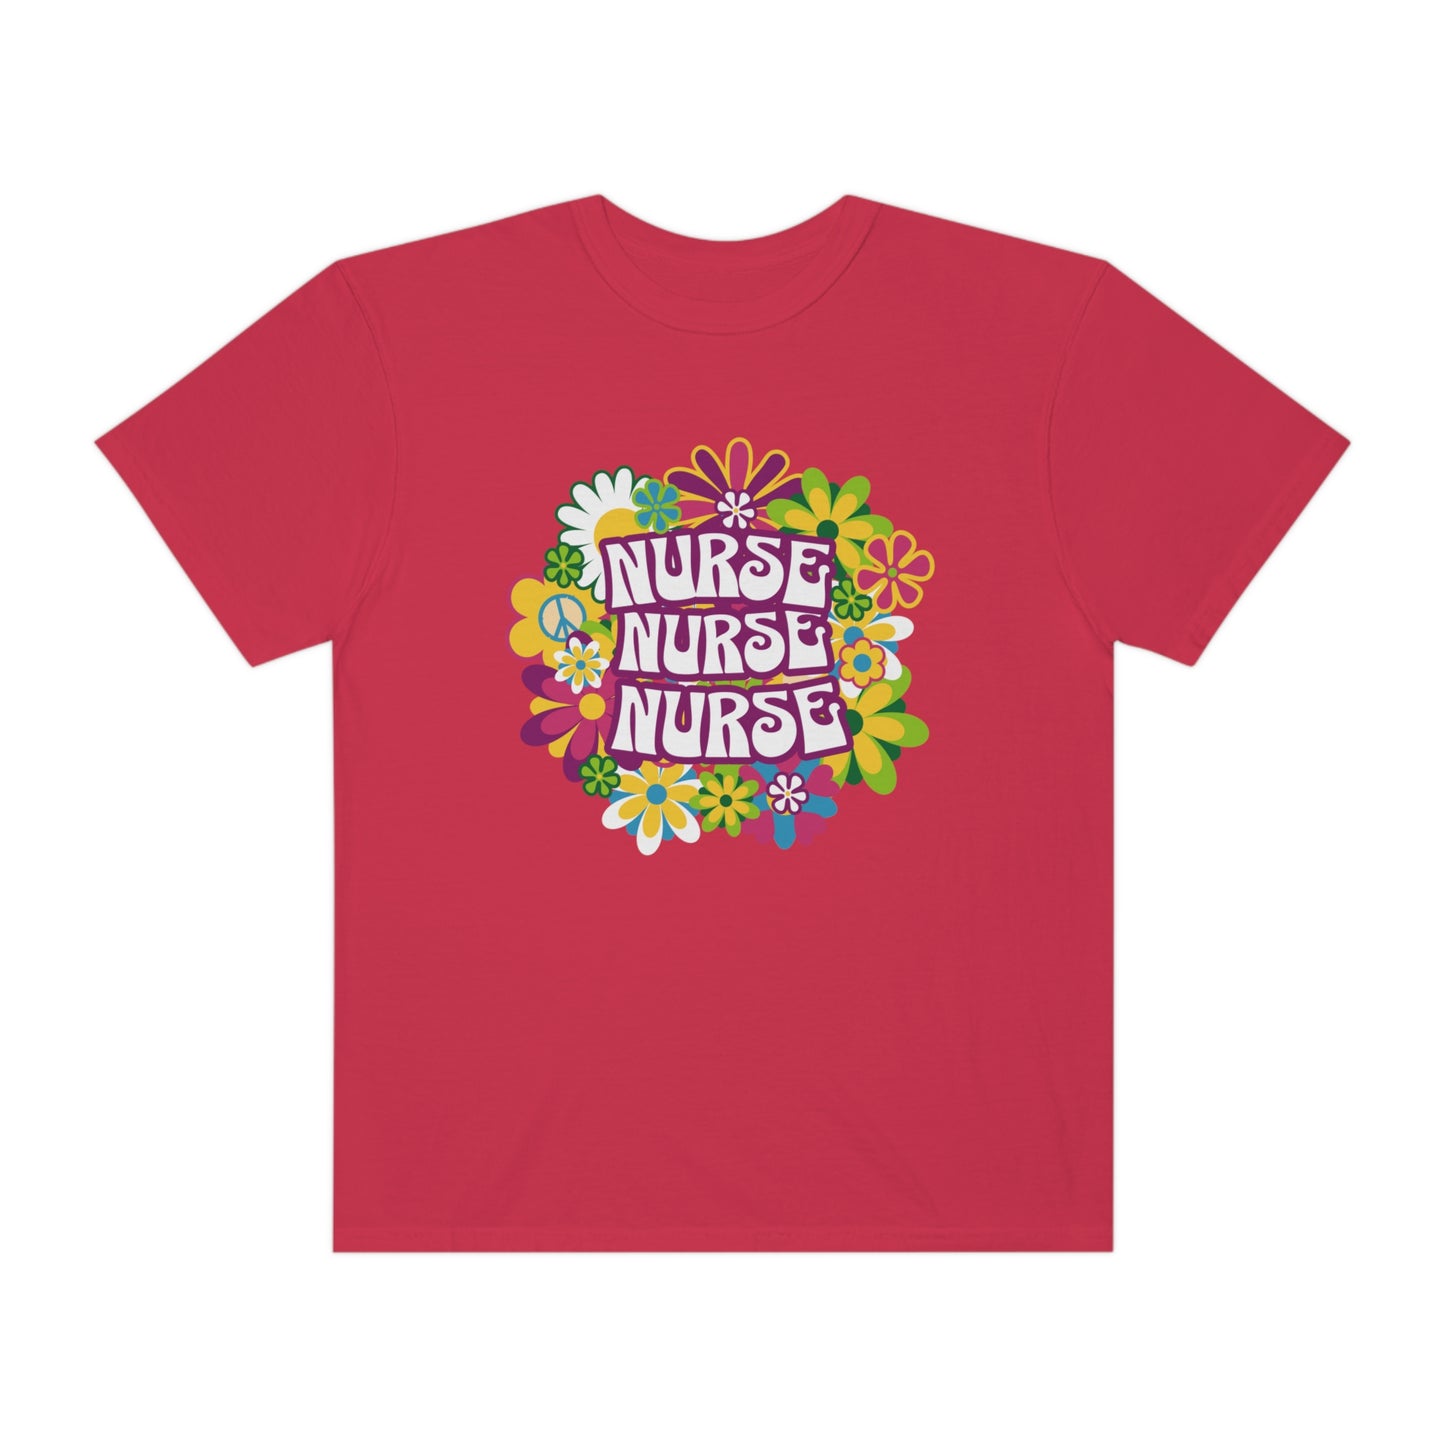 Groovy Retro Nurse Shirt gift, Boho Hippie Floral print T-Shirt for Nurses, Comfort color flower cottage core design tshirt registered nurse - Teez Closet